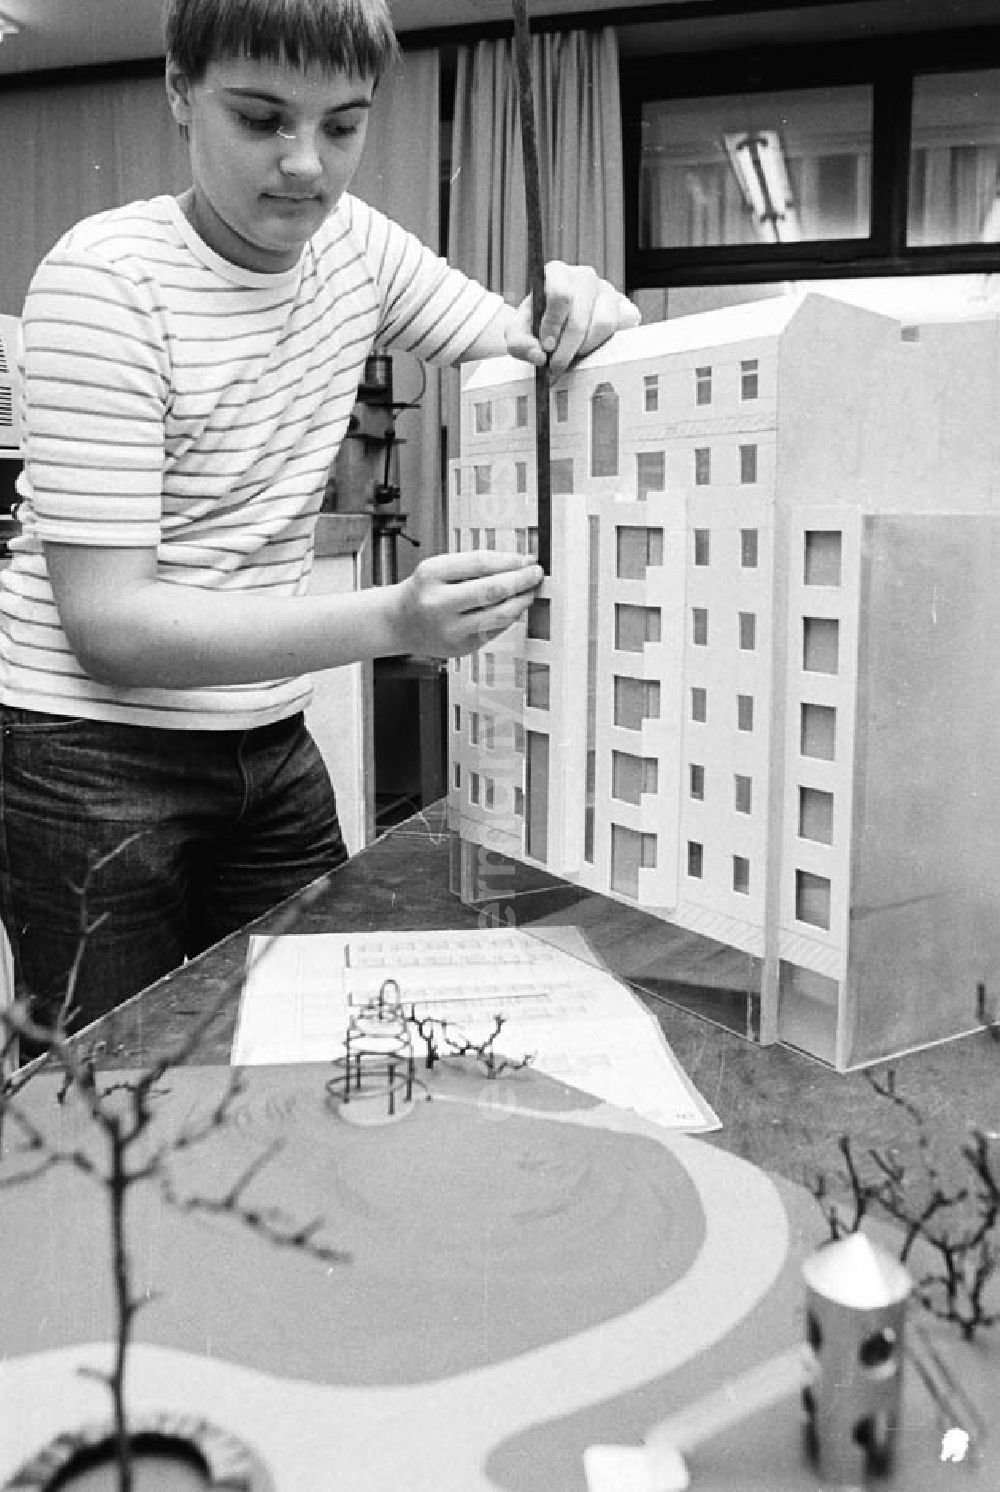 GDR picture archive: Berlin - Arbeitsgemeinschaft Modellbau im Pionierpalast Ernst Thälmann in der Wuhlheide. Junge / Kind an Modellhaus beim messen.